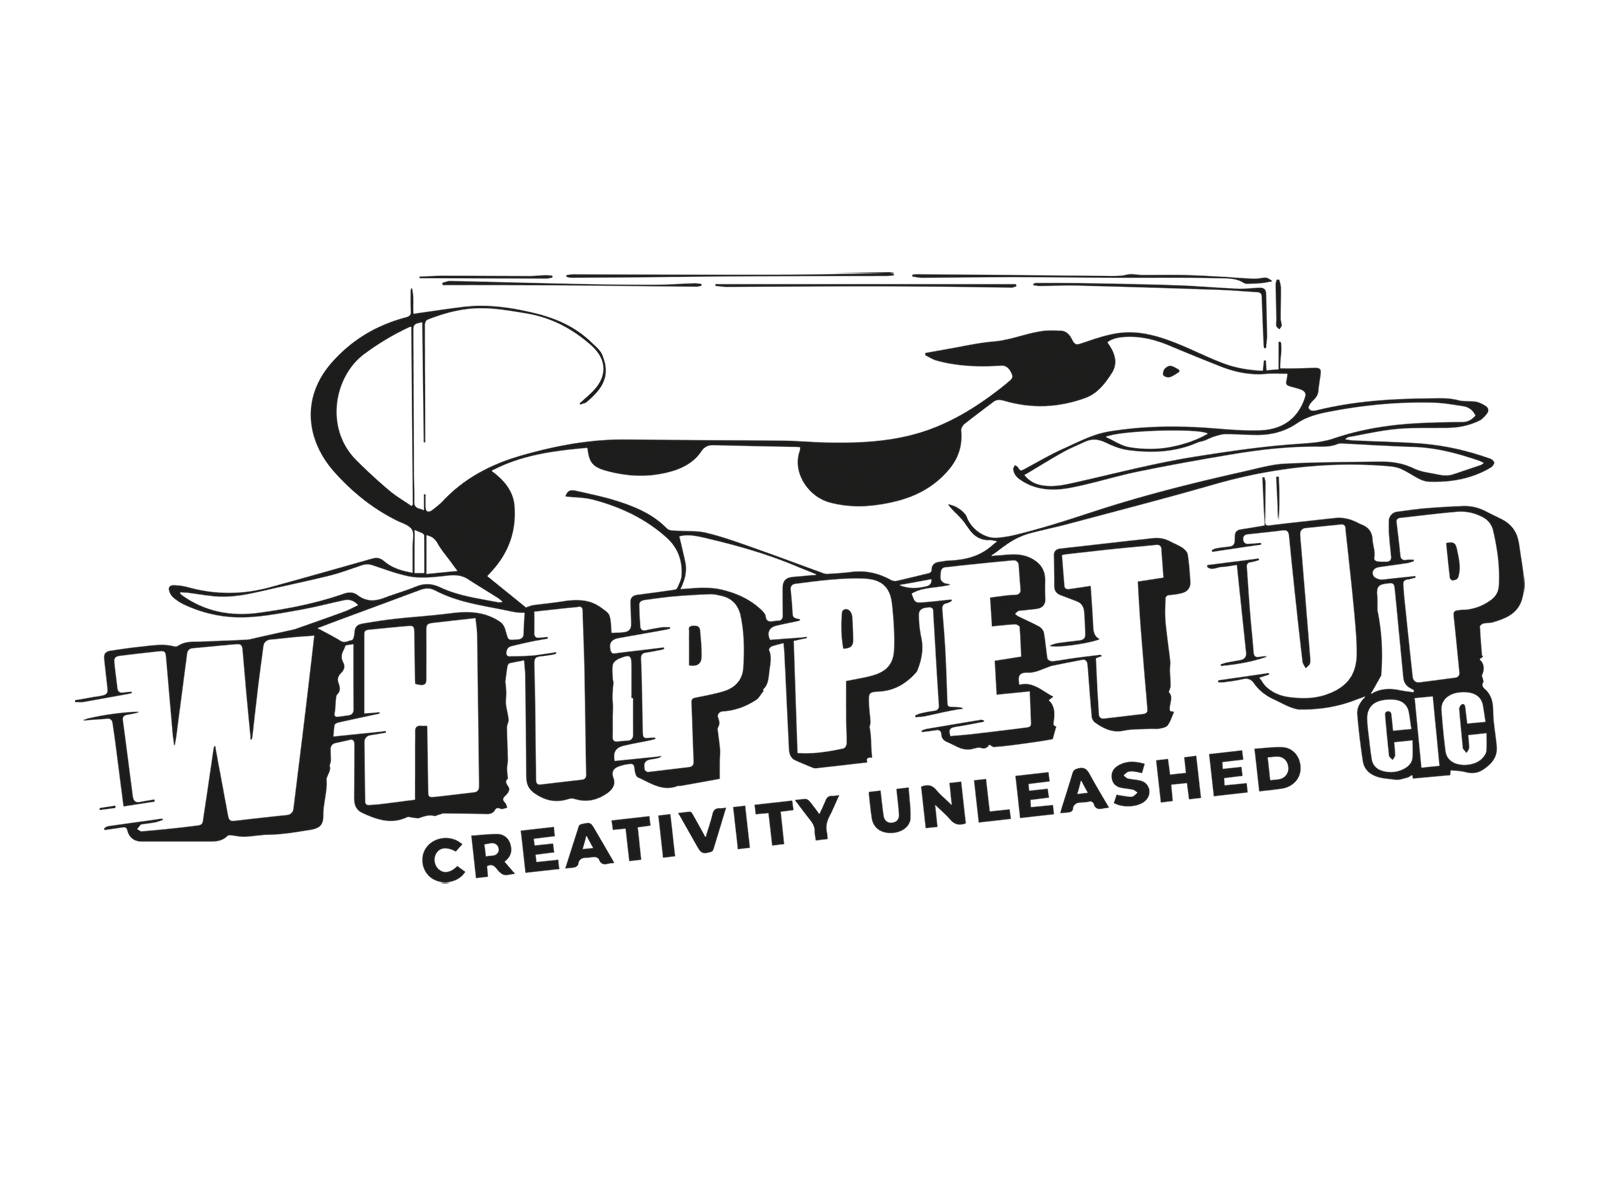 Whippet Up logo animation canine dog frame animation frame by frame animation gallop greyhound logo logo animation running whippet